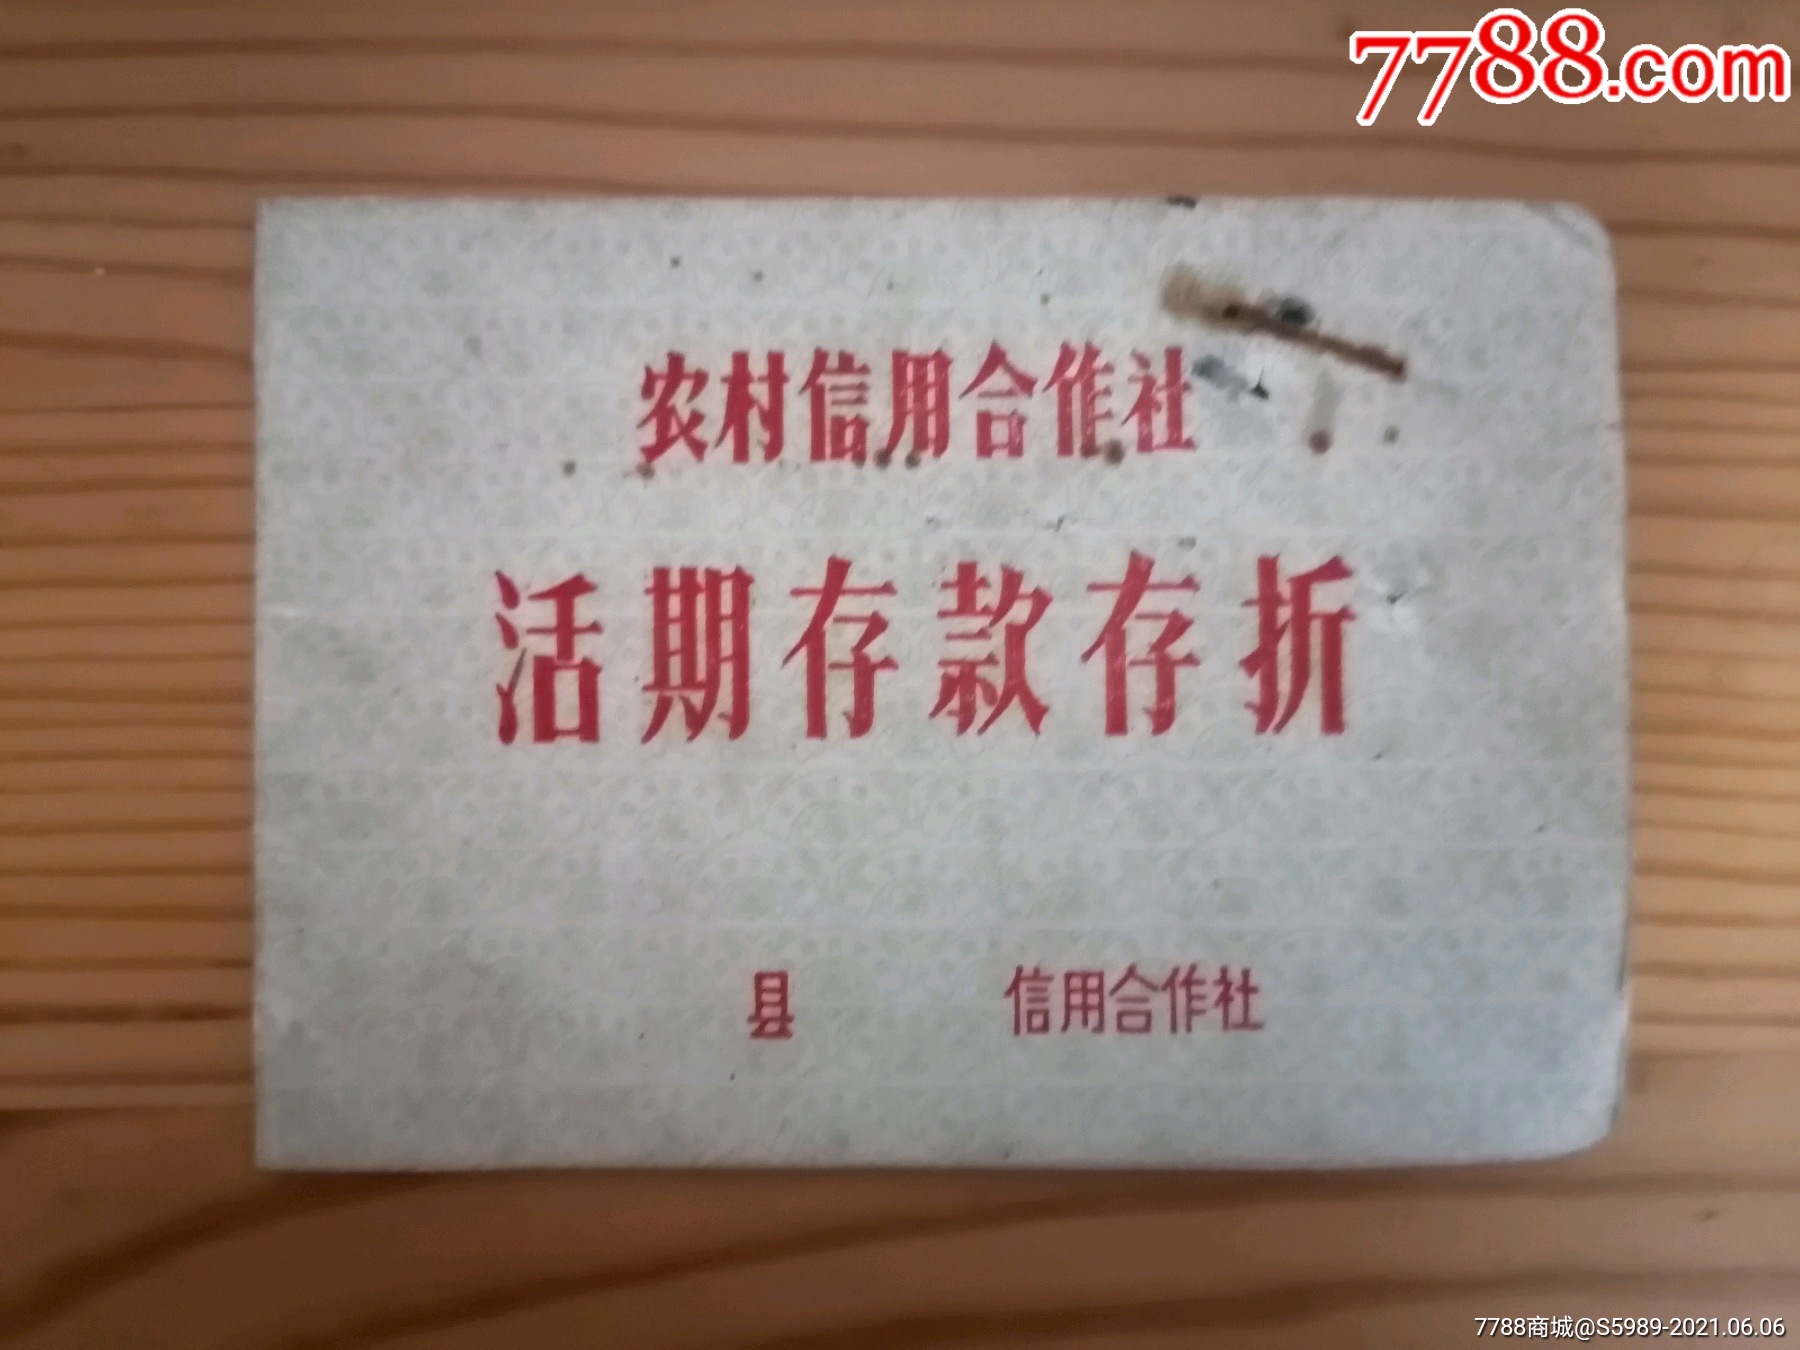 1985年五峰县农村信用合作社活期存款存折